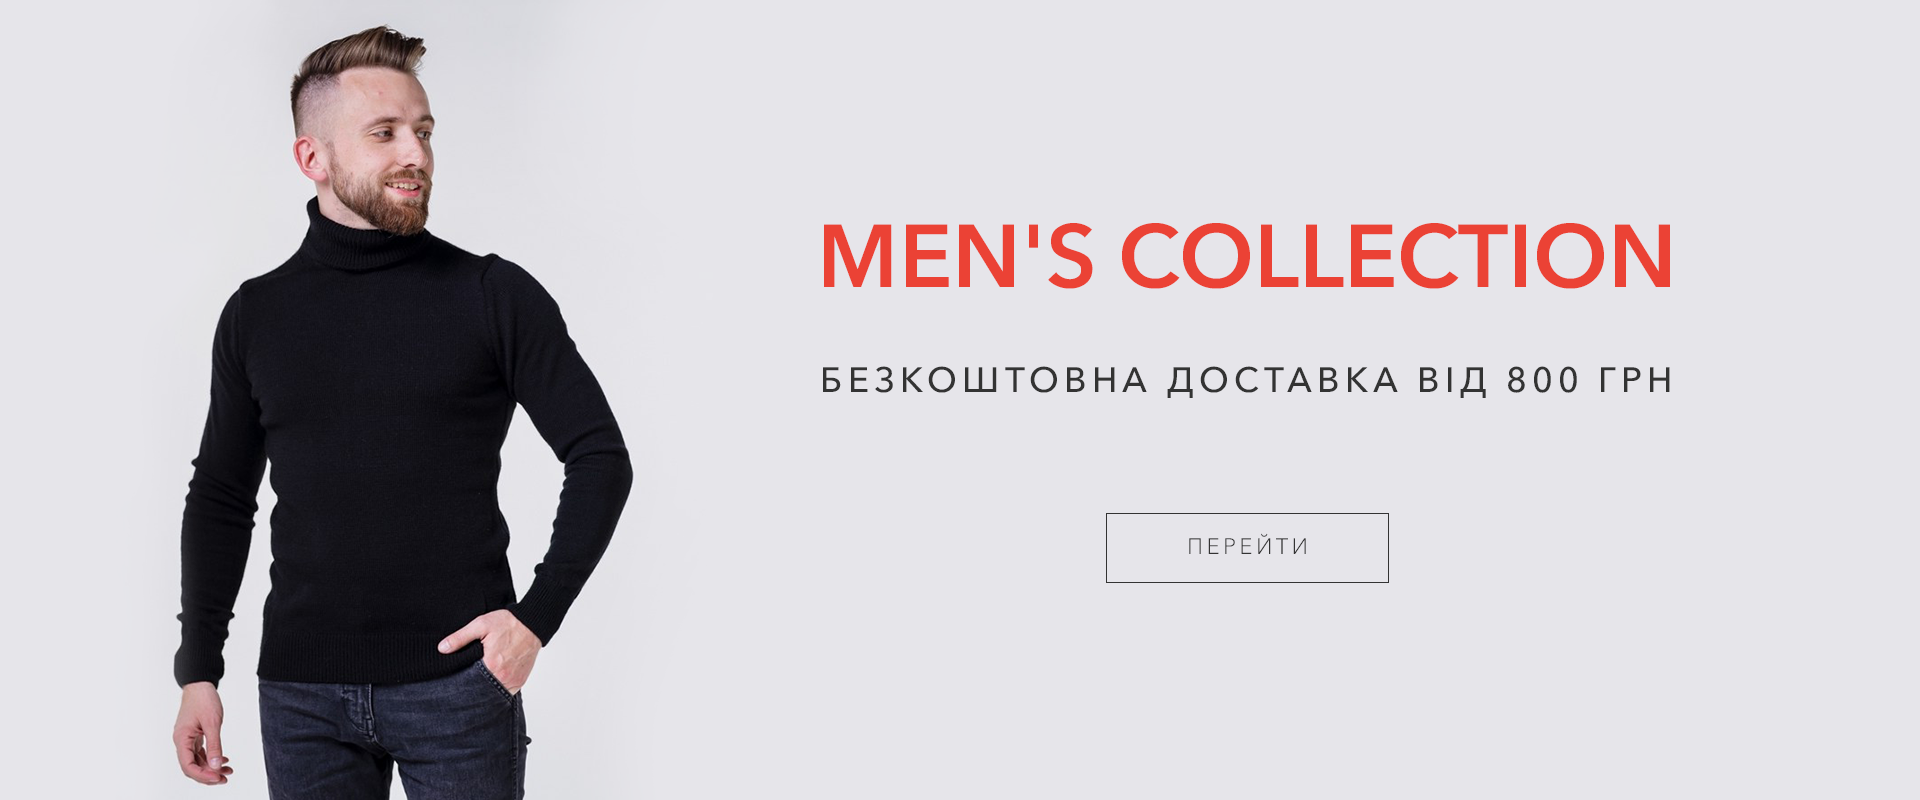 Купить Модную Мужскую Одежду В Интернет Магазине